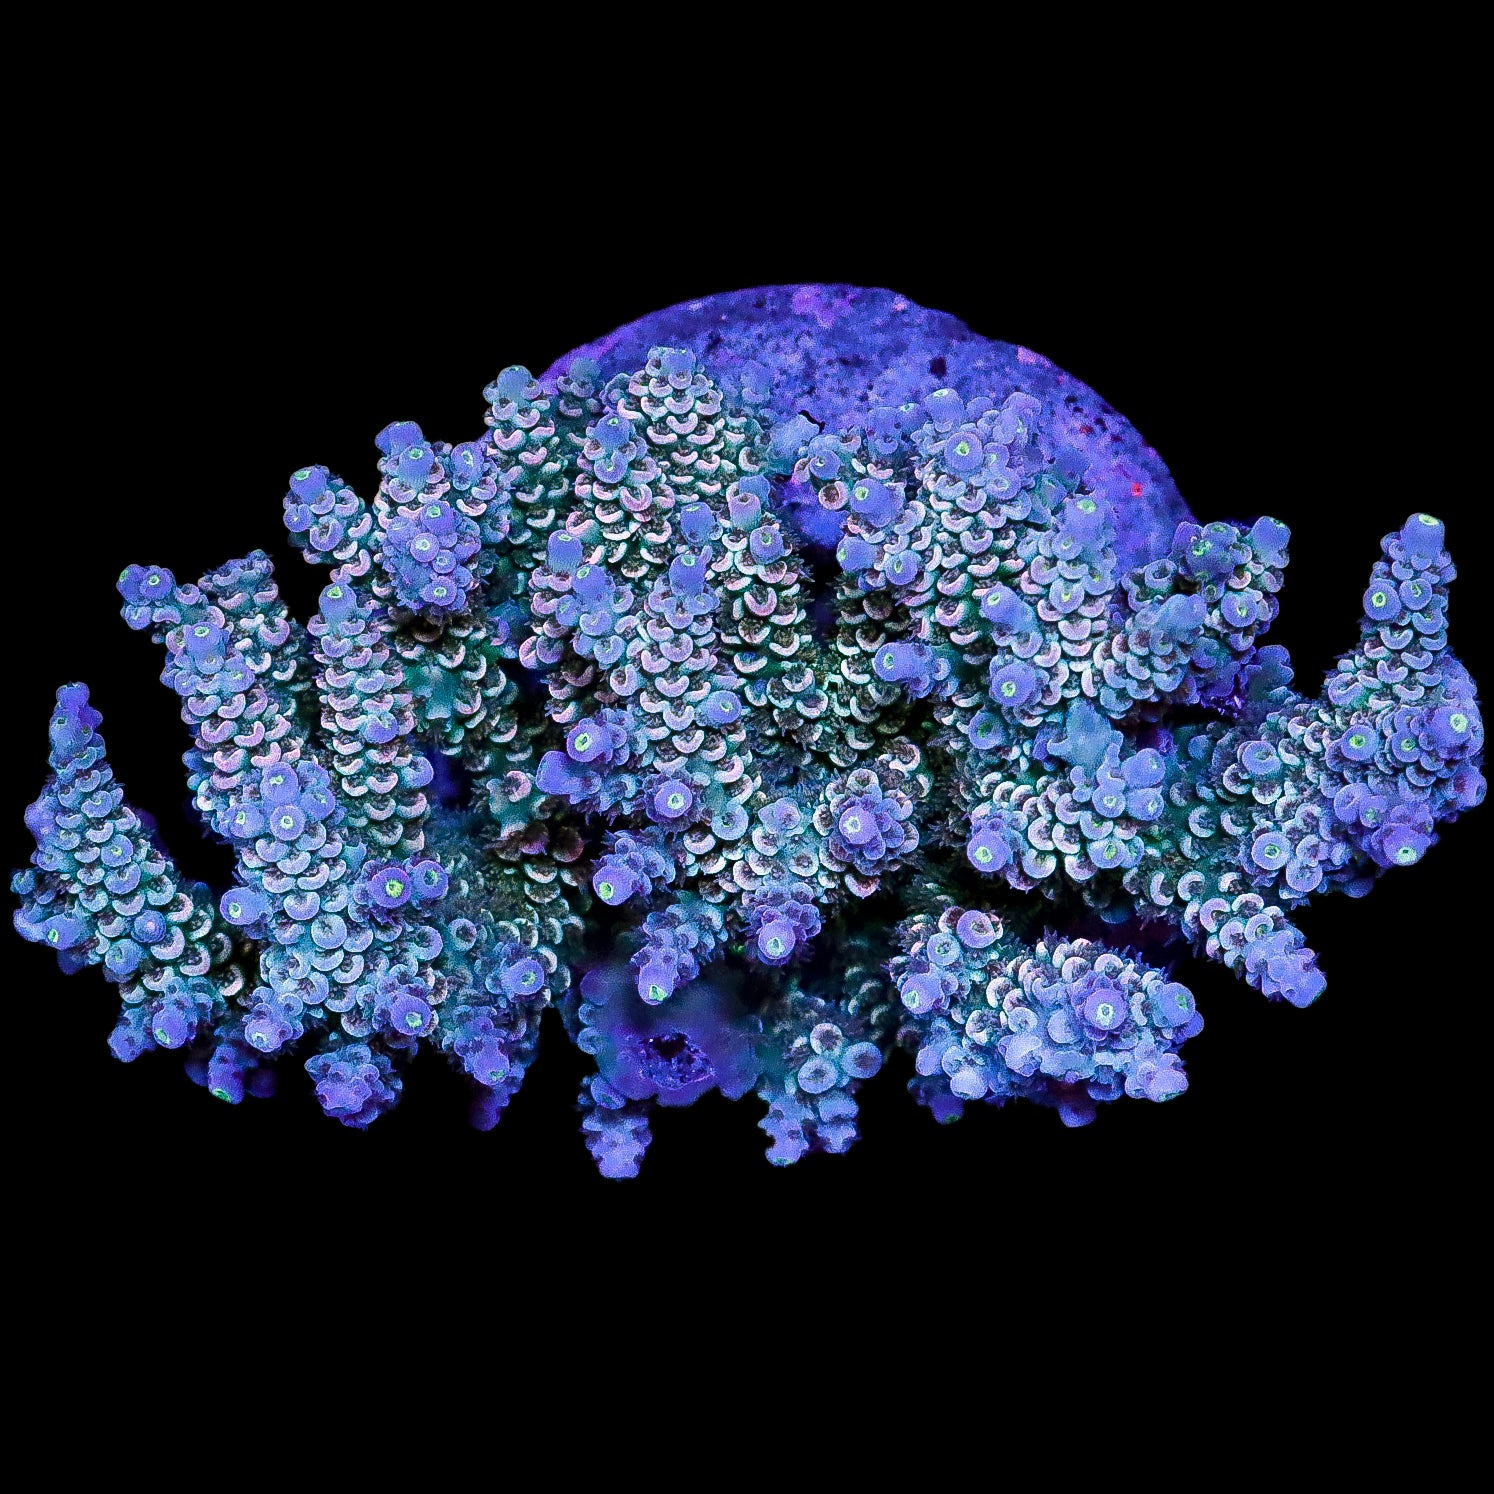 Ultra Indo Acropora Coral Colony